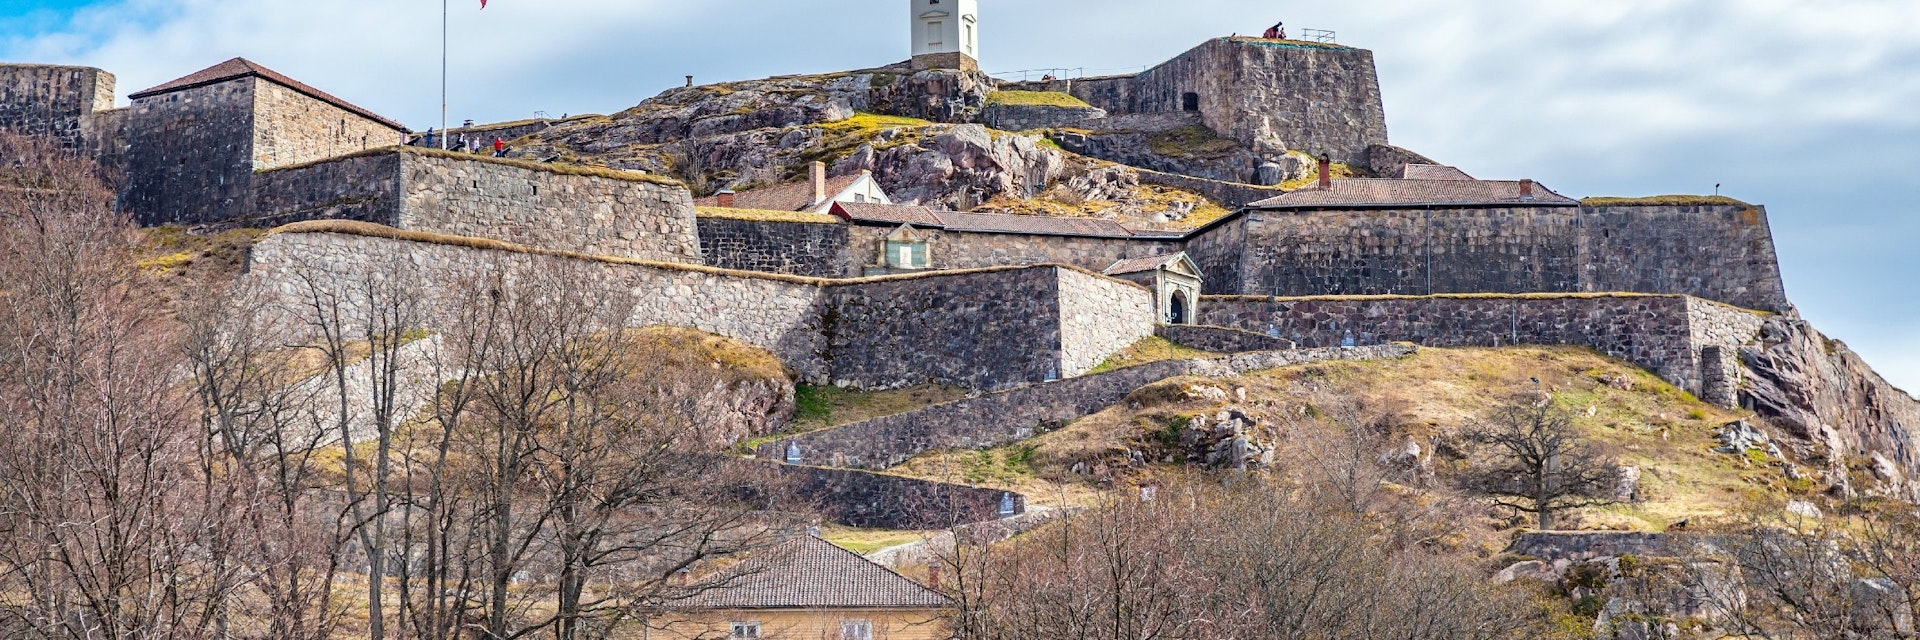 Fredriksten fortress overlooking Norwegian city Halden; Shutterstock ID 1467502673; your: Bridget Brown; gl: 65050; netsuite: Online Editorial; full: POI Image Update